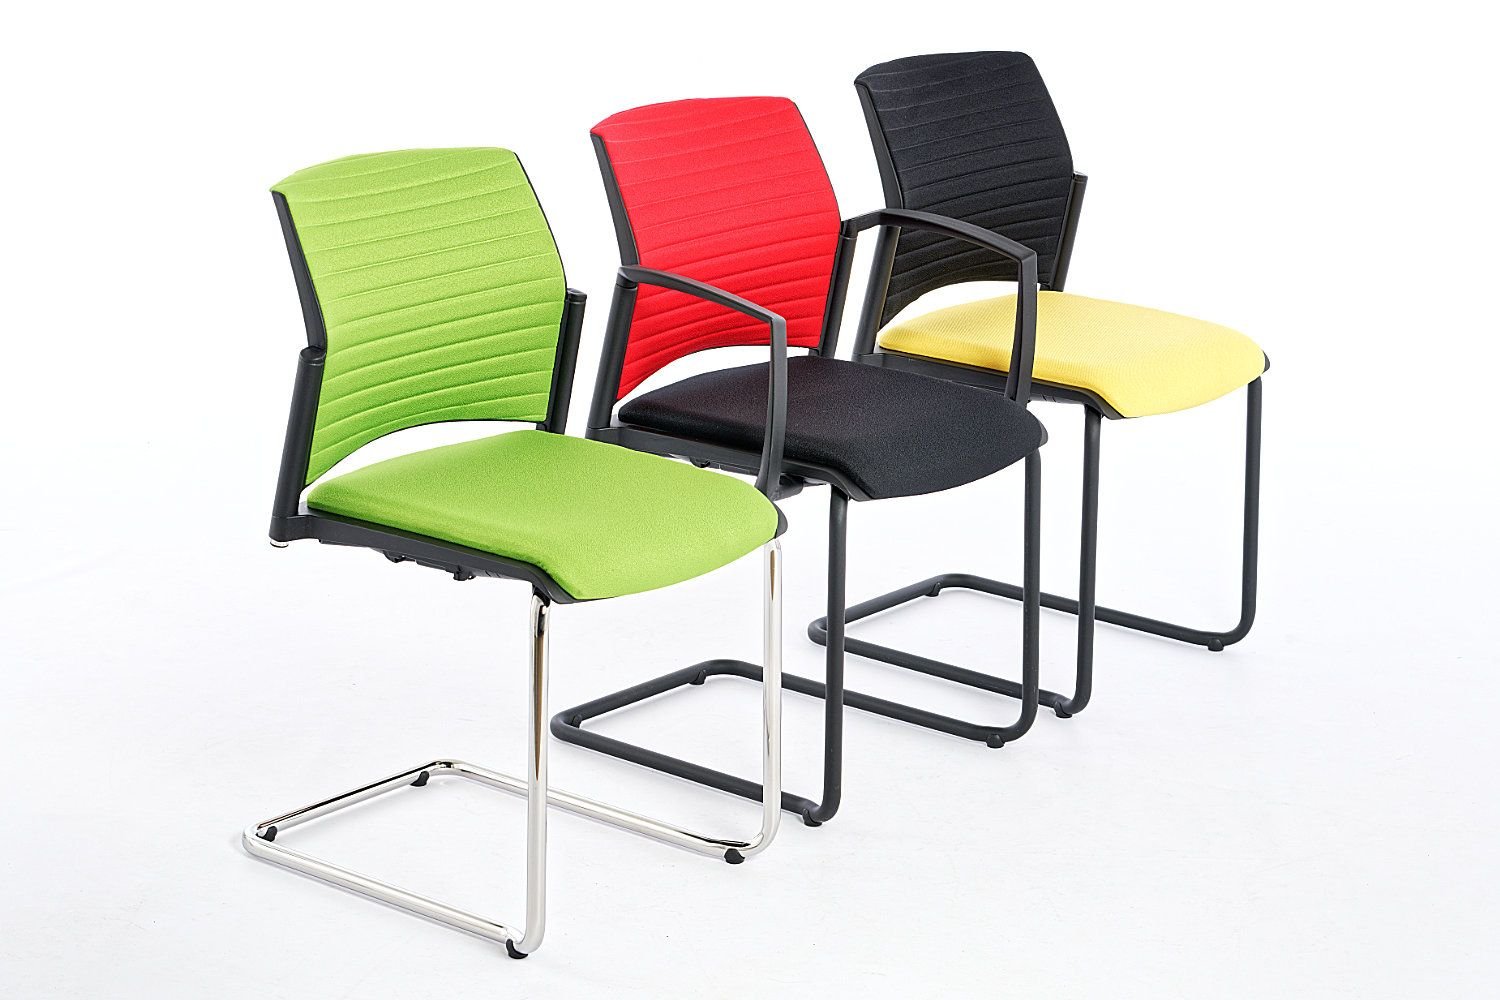 able Ausstattungsmerkmale ermöglichen eine individuelle Stuhlkonfiguration